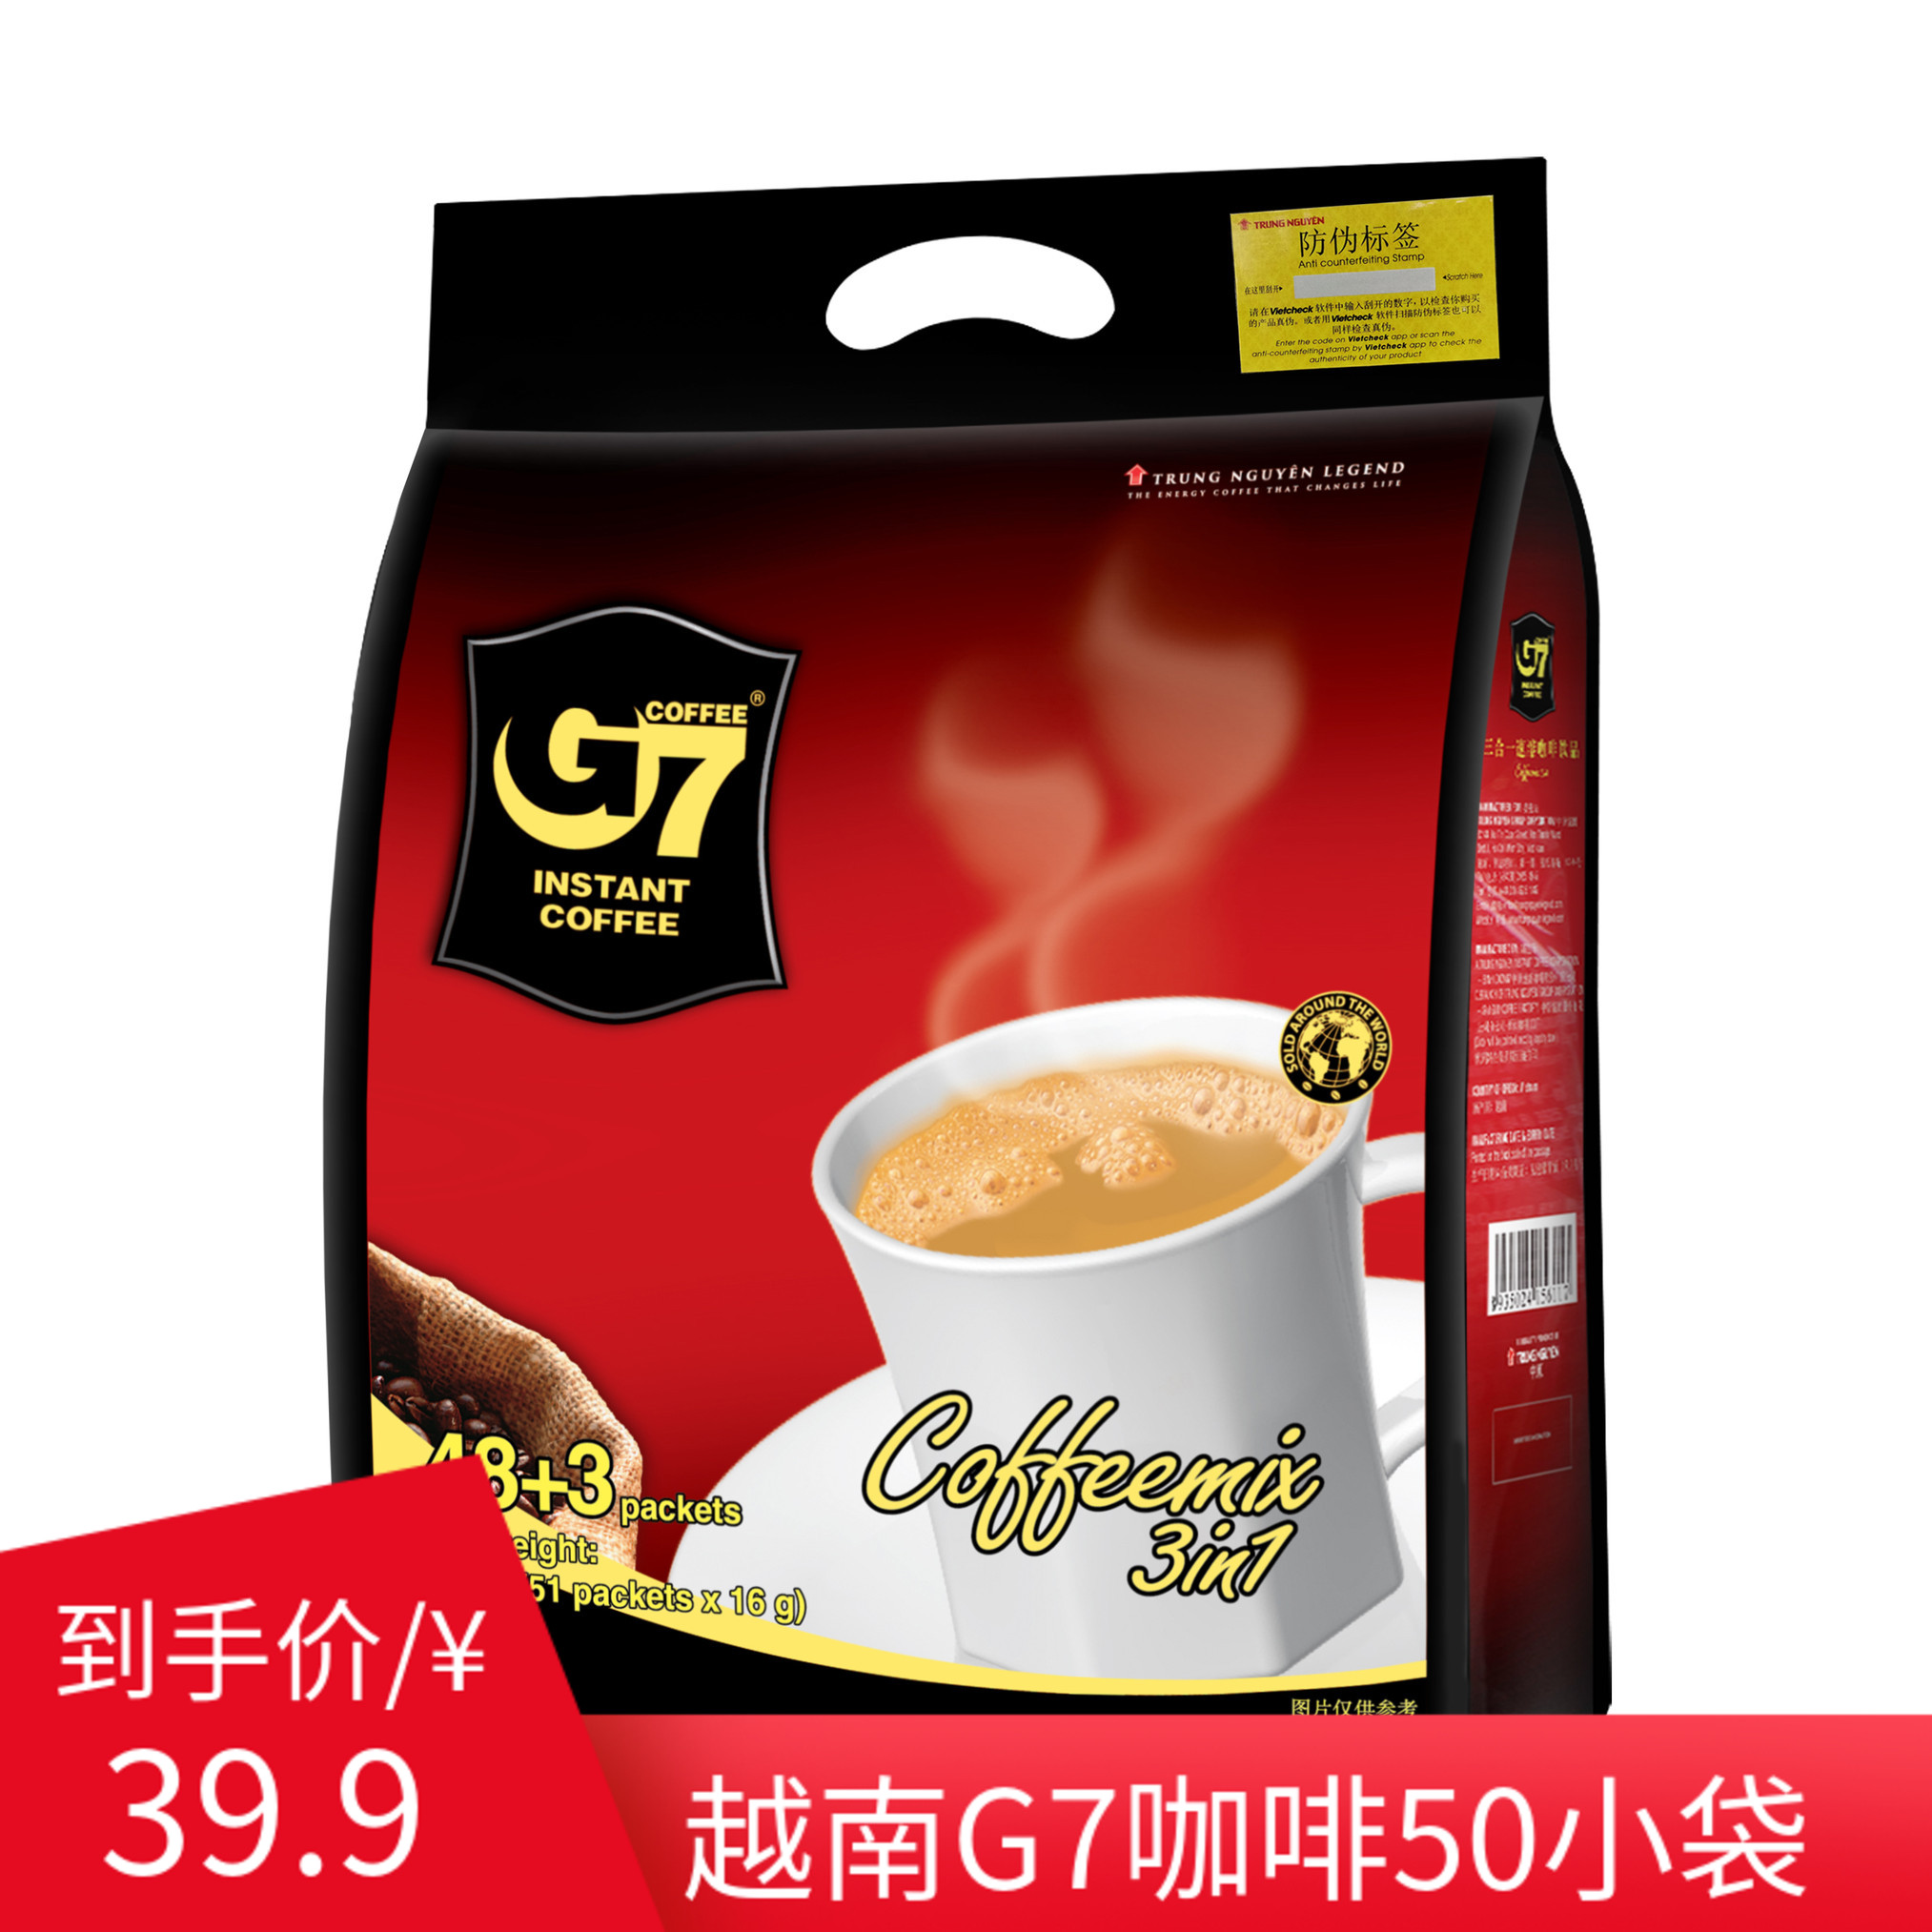 中原G7三合一速溶咖啡16g50袋800g越南进口冲饮休闲含糖袋装包装